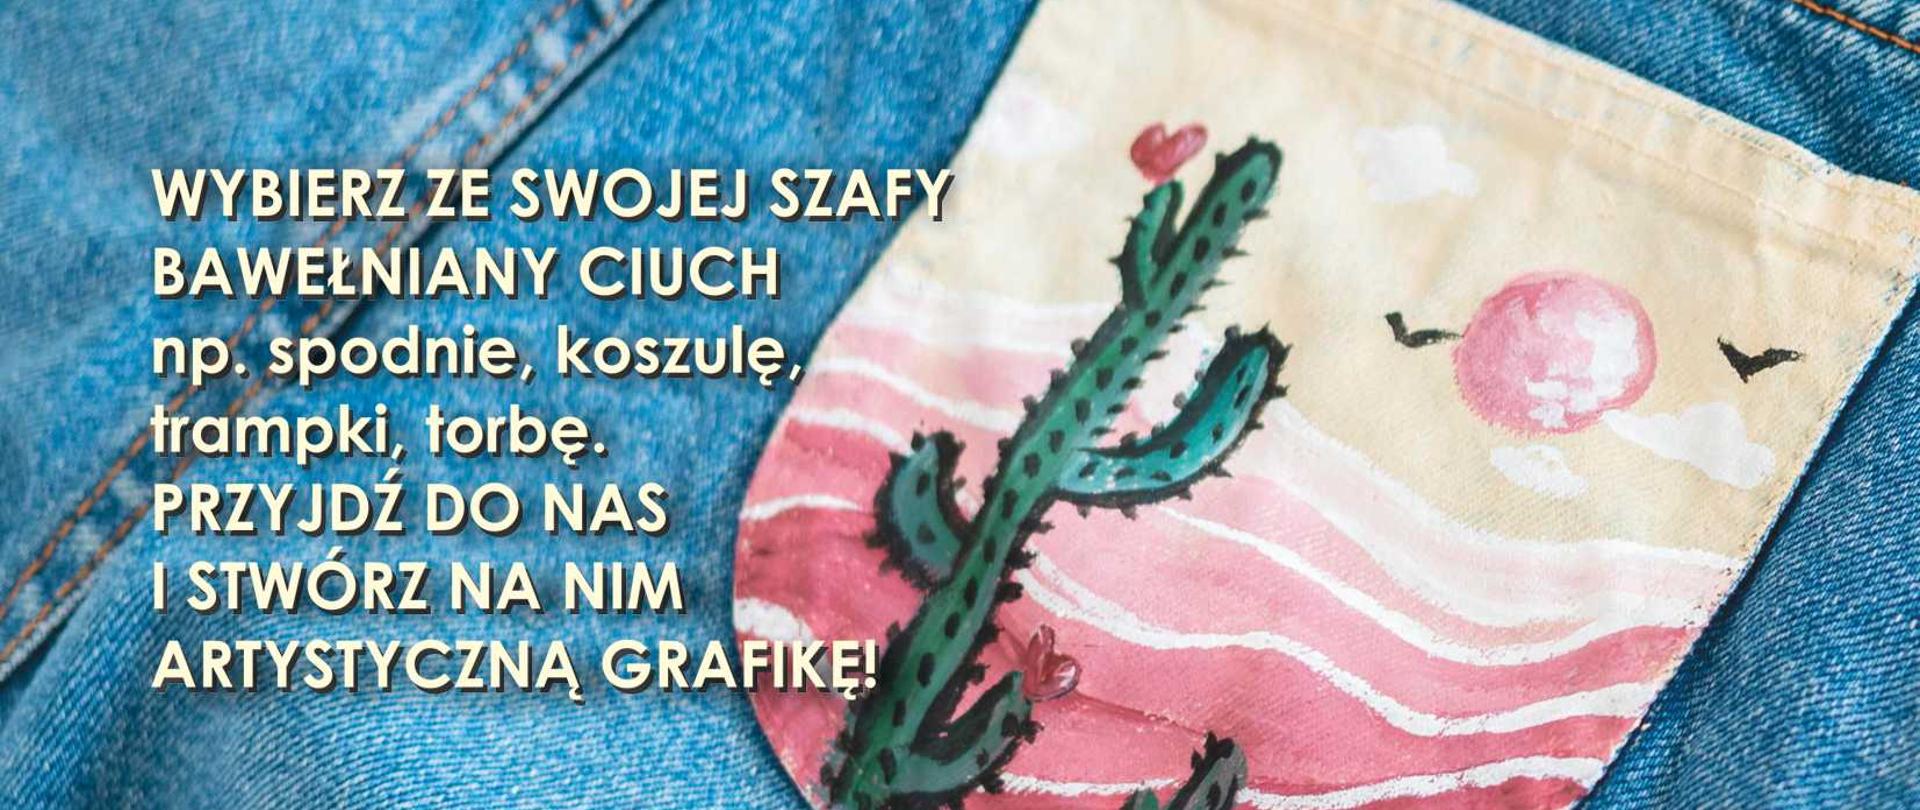 Warsztaty malowana moda - w centralnym miejscu plakatu zdjęcie dżinsów z kolorową kieszenią, przedstawiającą kaktusy na różowym tle. U góry i dołu zdjęcia napisy organizacyjne (zawarte w artykule)